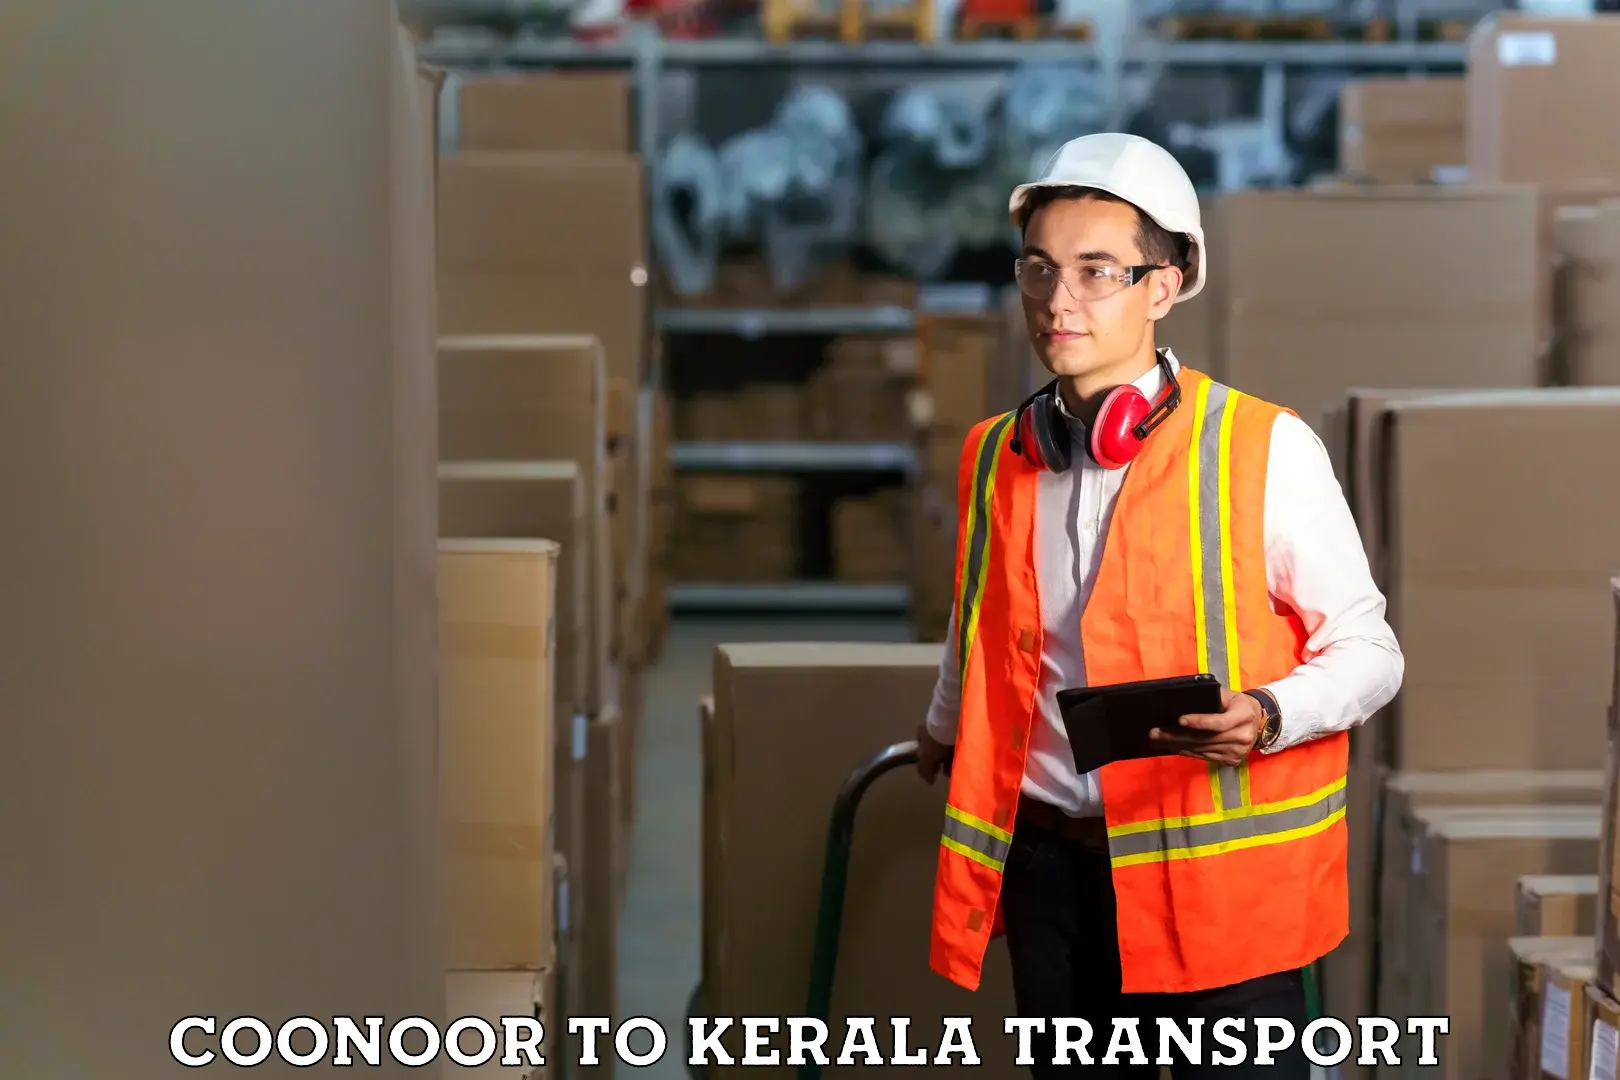 Online transport service Coonoor to Kuthumkal